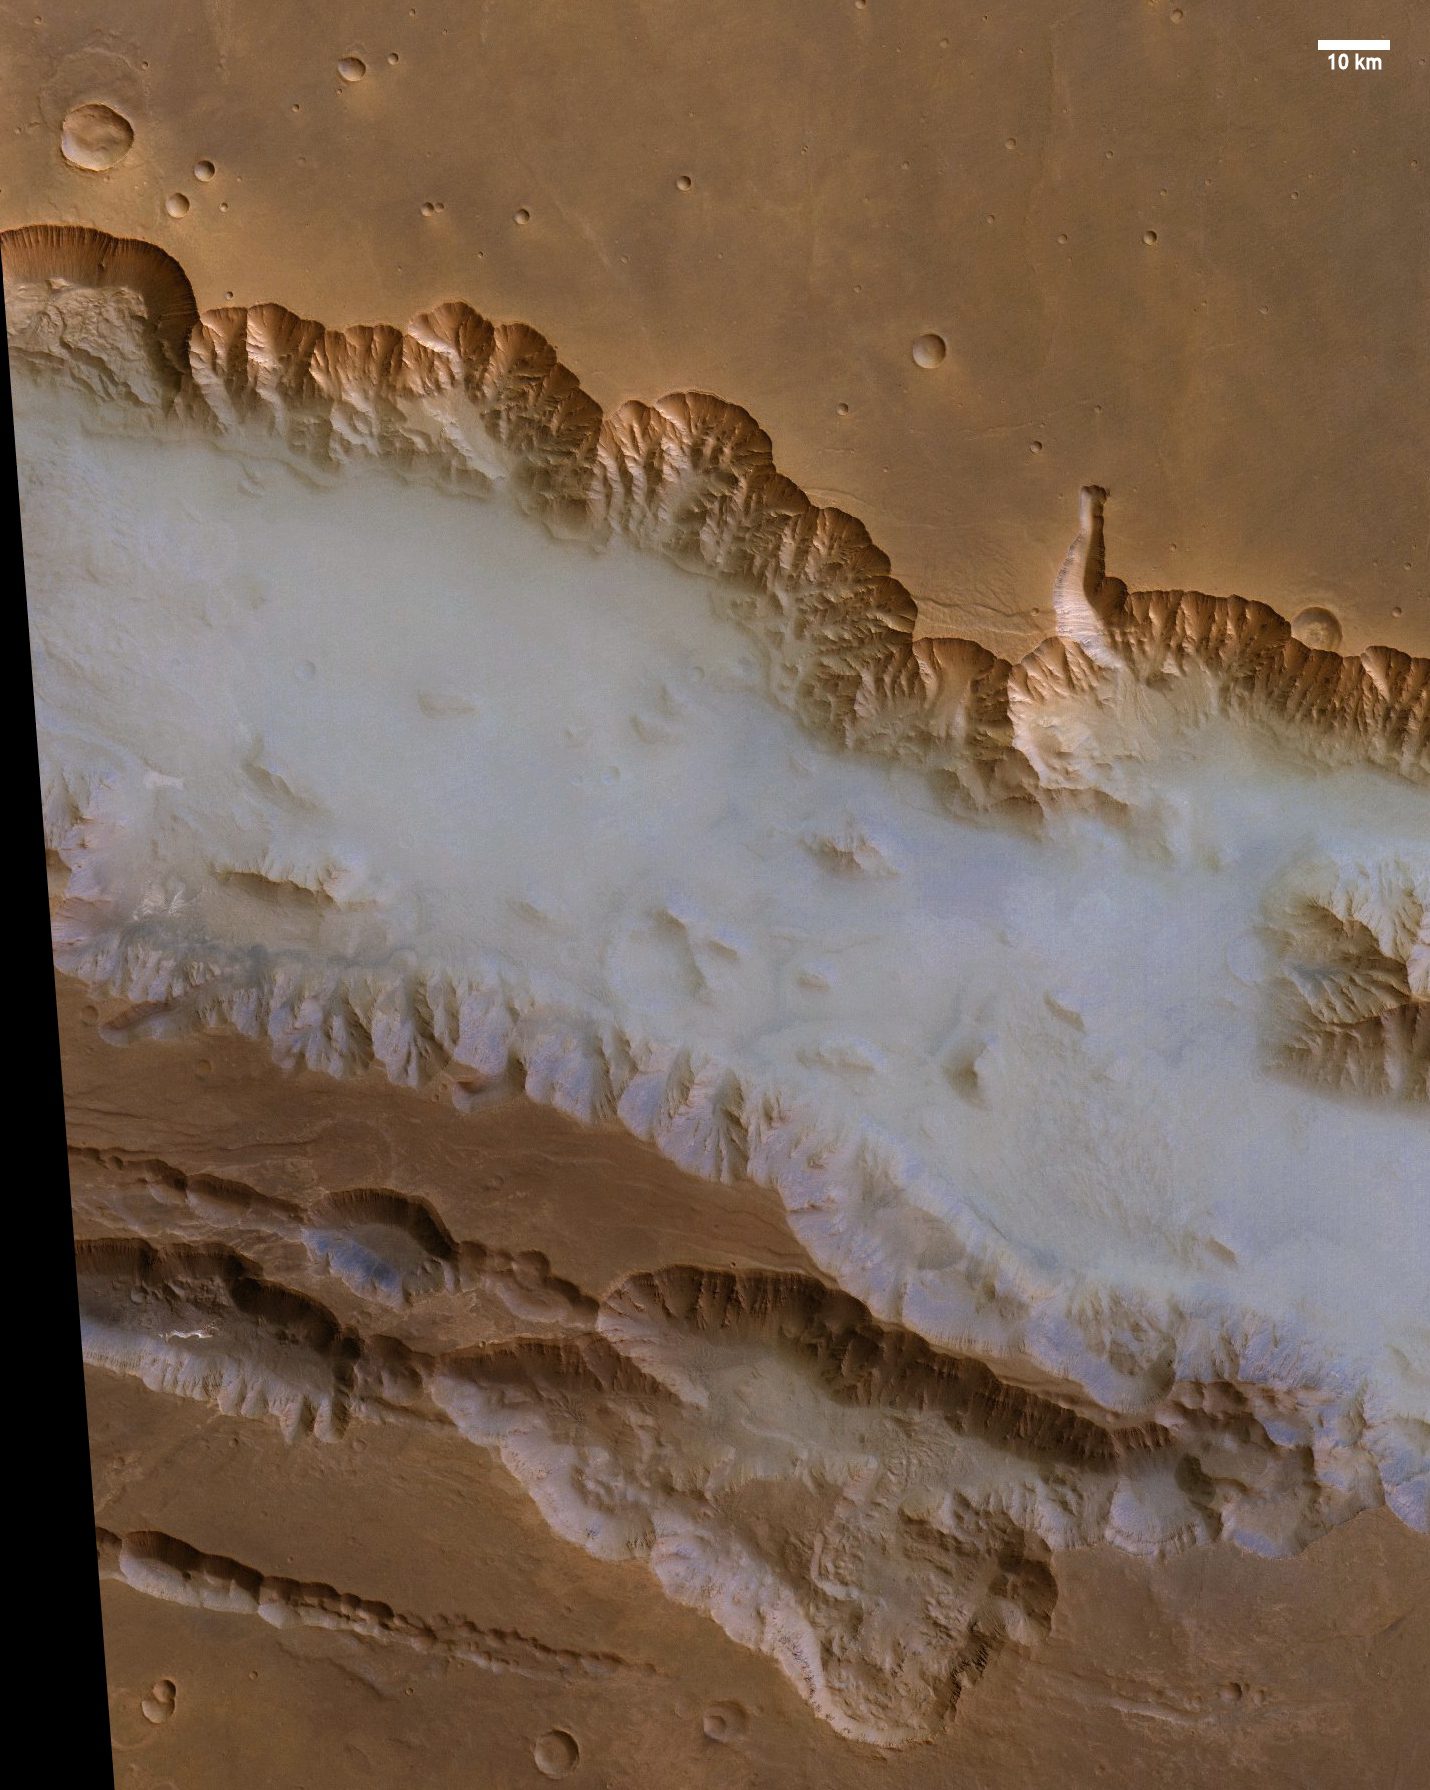 Mars Express dari Badan Antariksa Eropa menangkap gambar kabut ini di Valles Marineris.